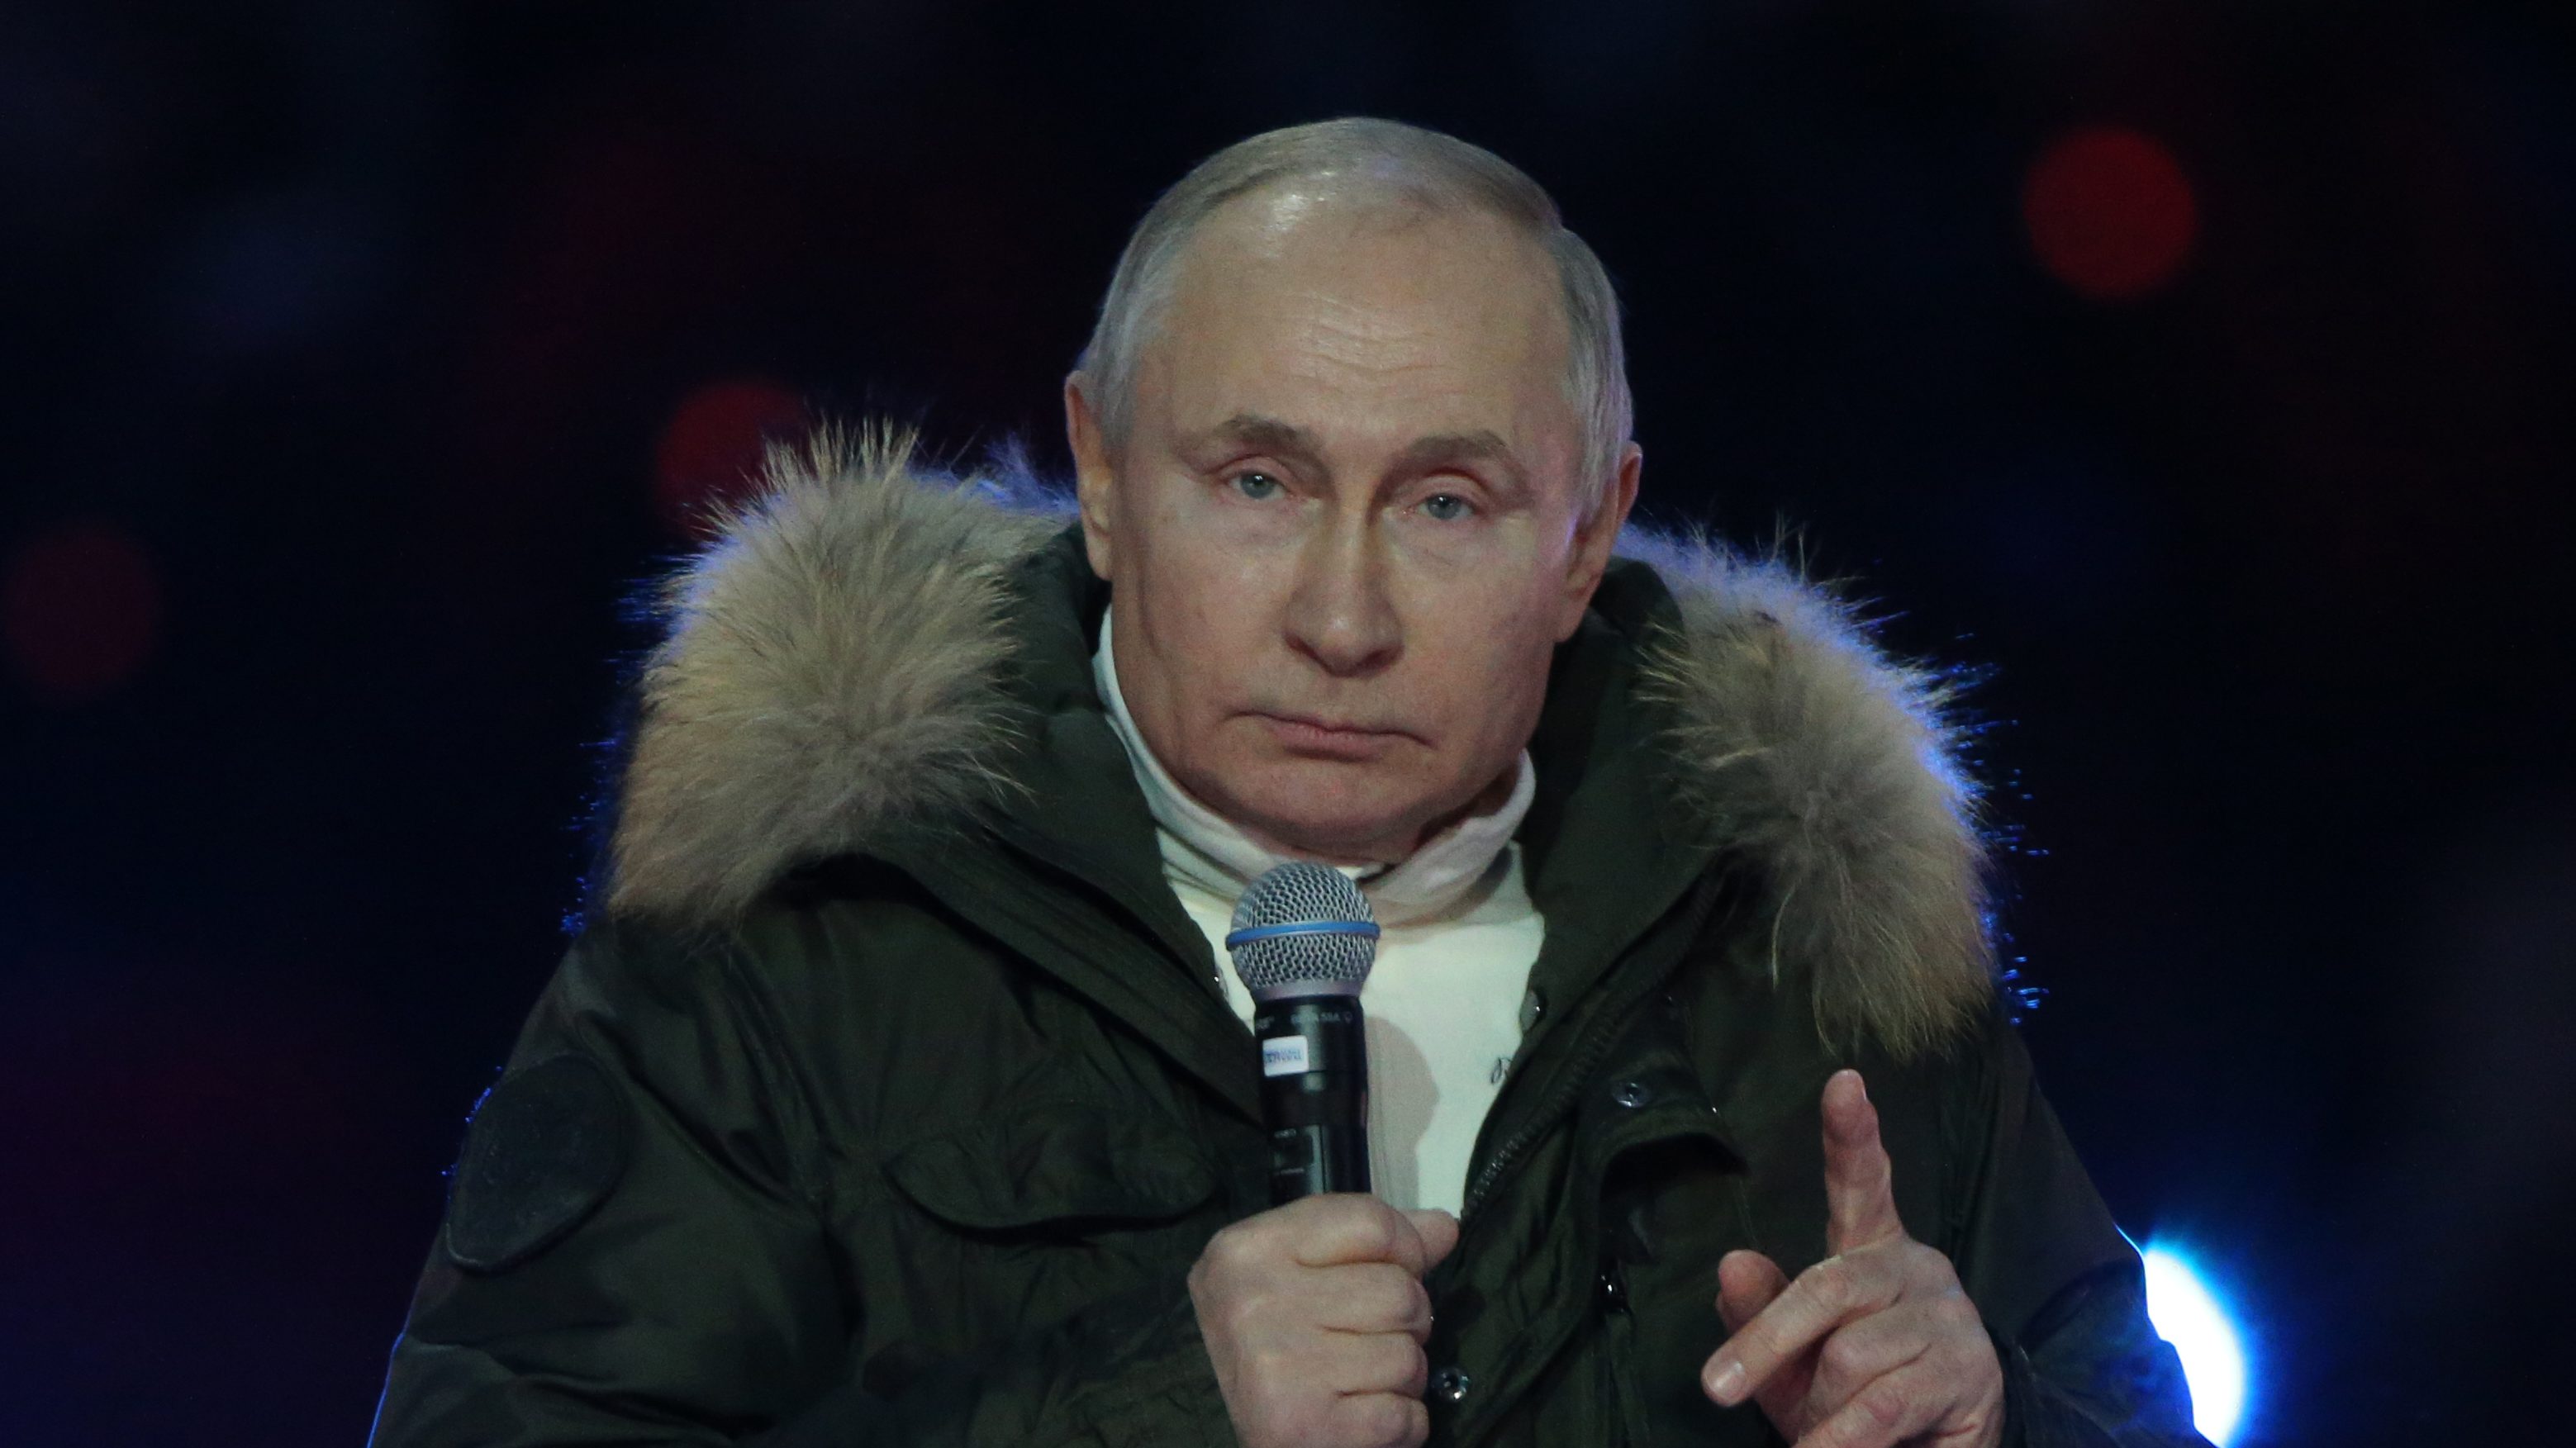 「ボトックスや美容整形でプーチンの表情はいっそう謎めく」仏政治学者がプーチンの“容姿”を分析 | 「強く男らしい権力者像」を追求したら、皮肉な結果に